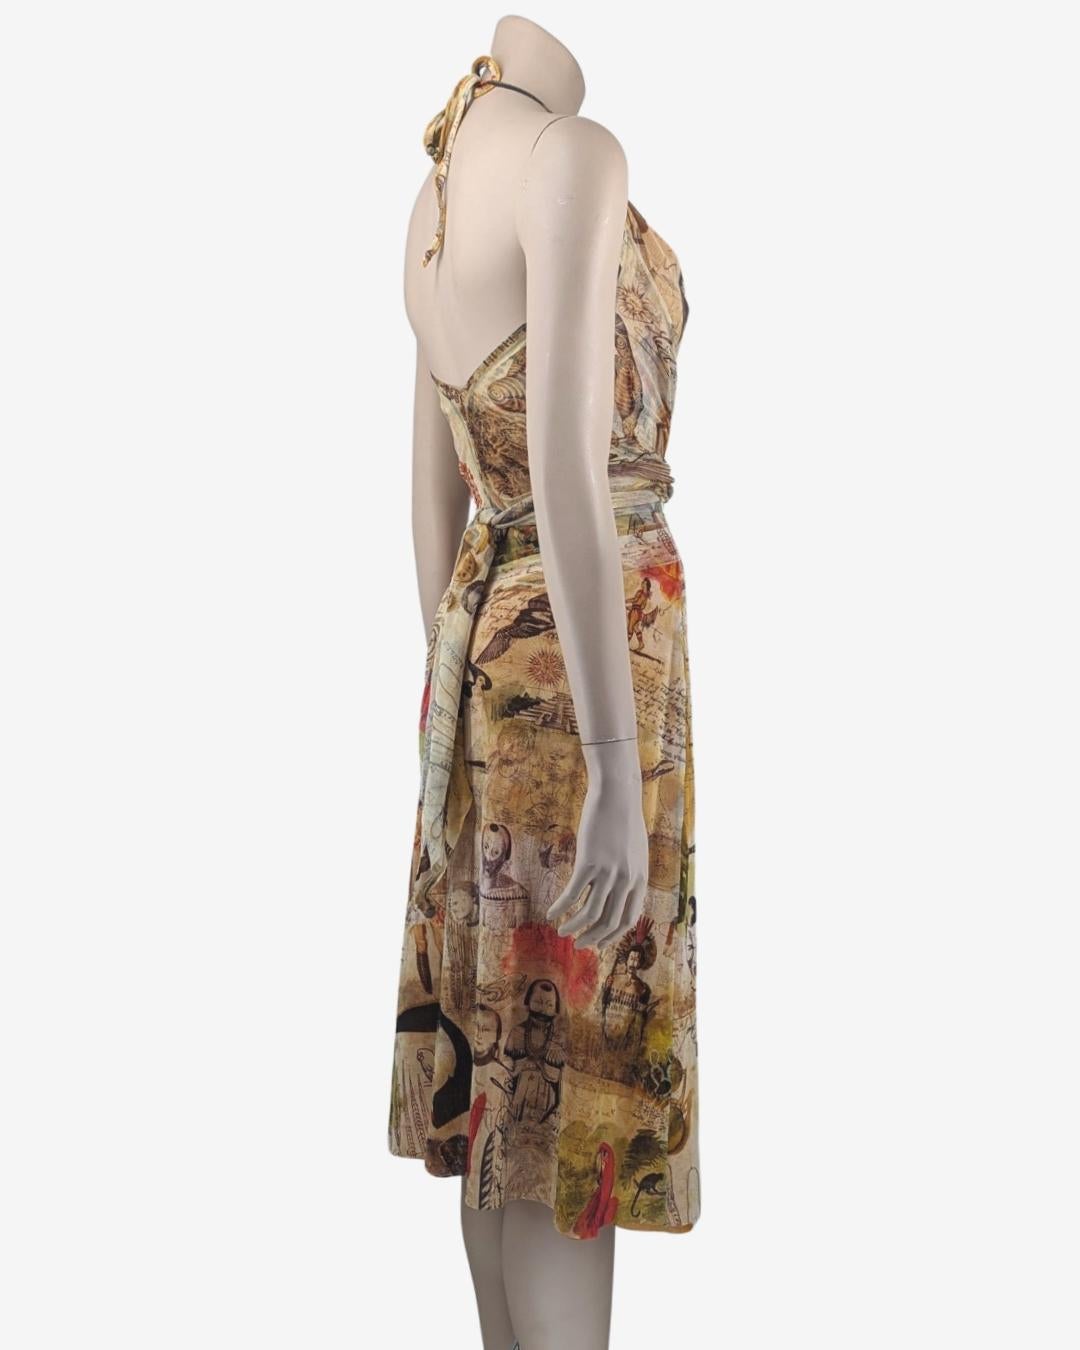 Jean Paul Gaultier Soleil Tribal Mesh Dress For Sale 1